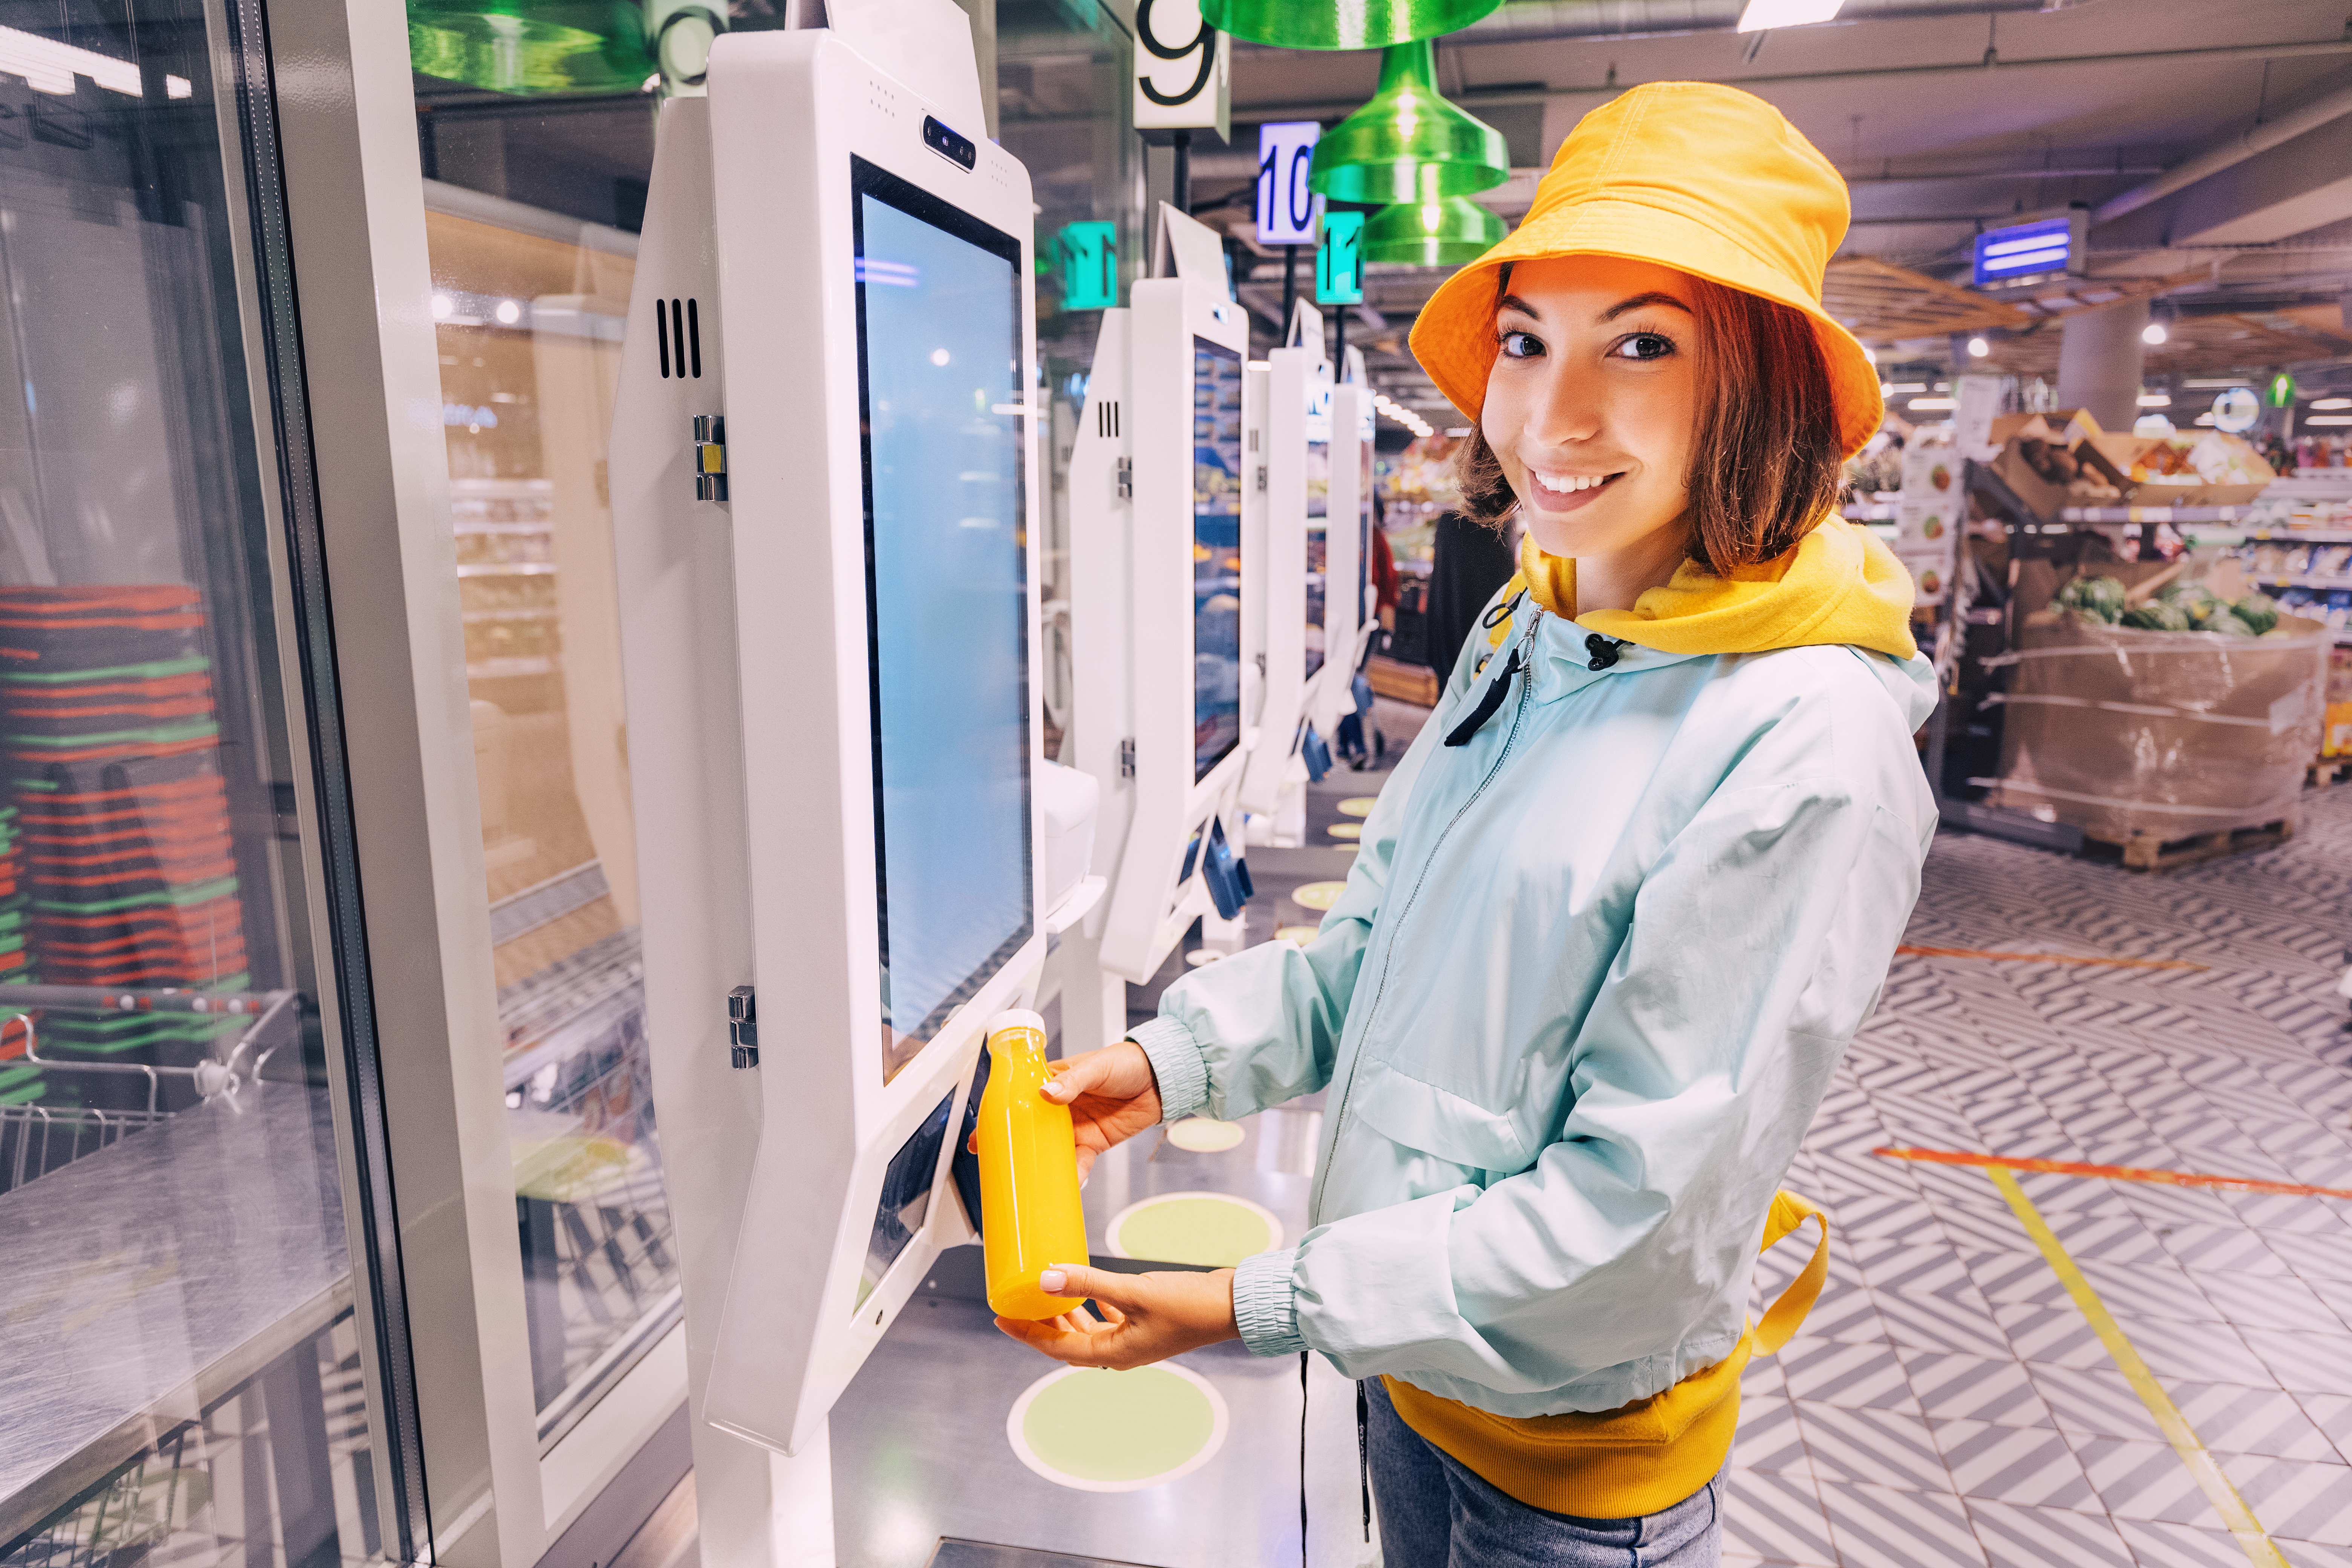 Retail POS self-checkout machine